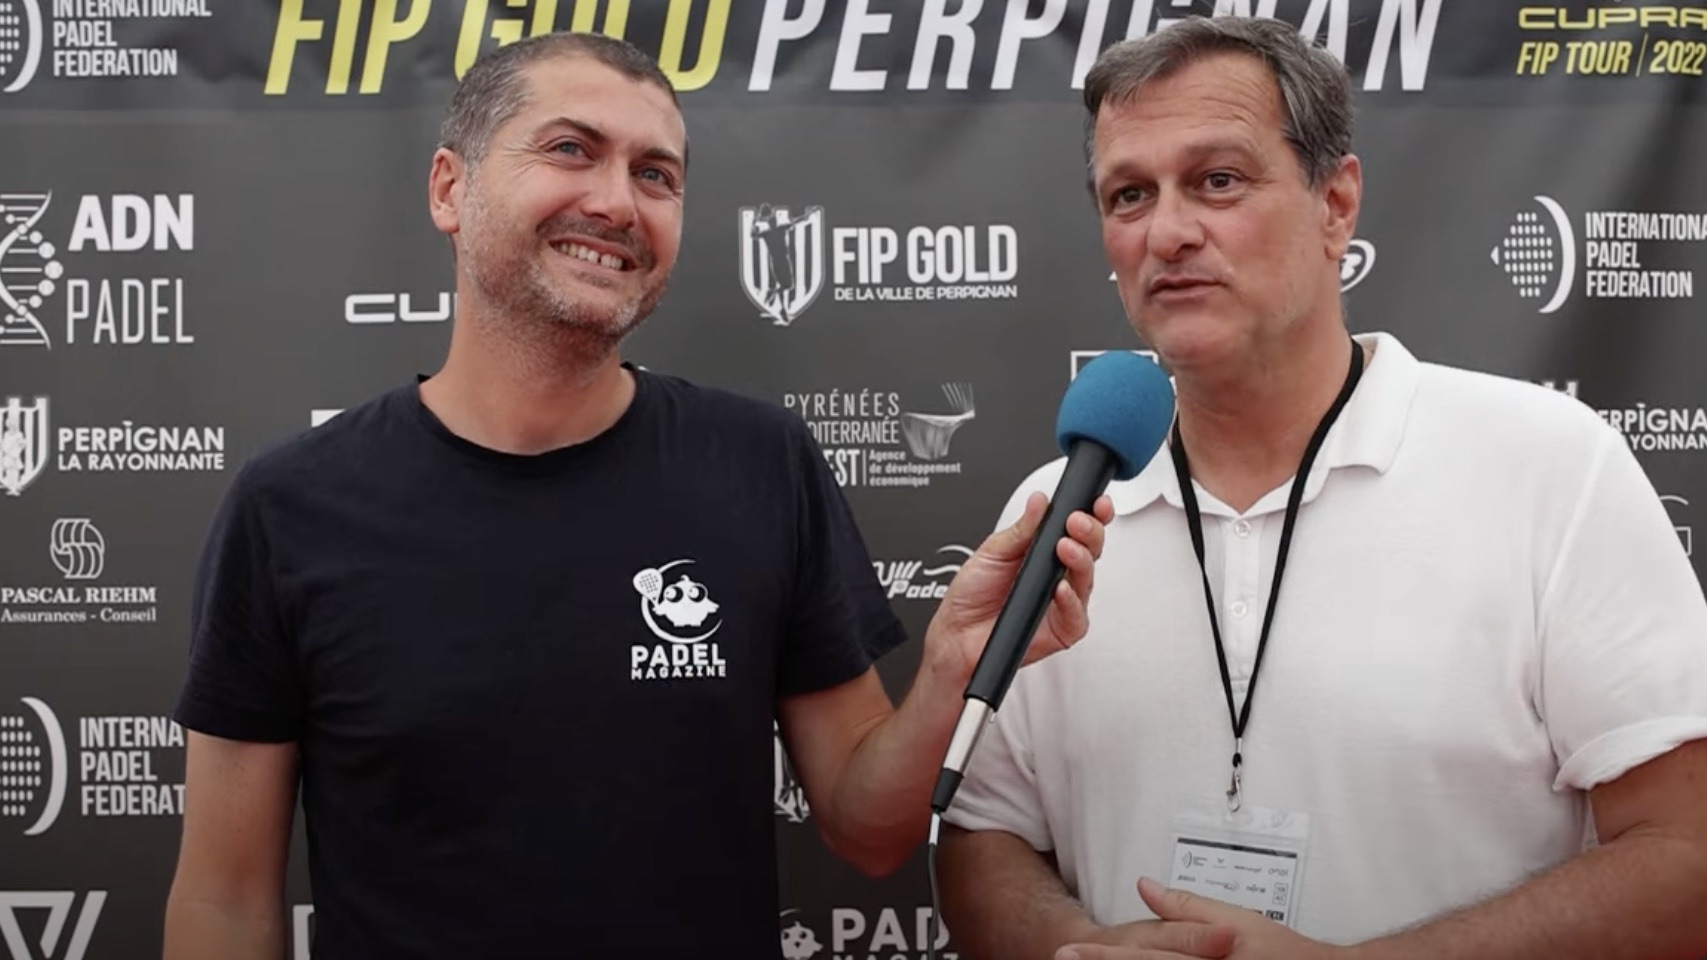 Louis Aliot: “Le FIP Gold de Perpignan est une fête”